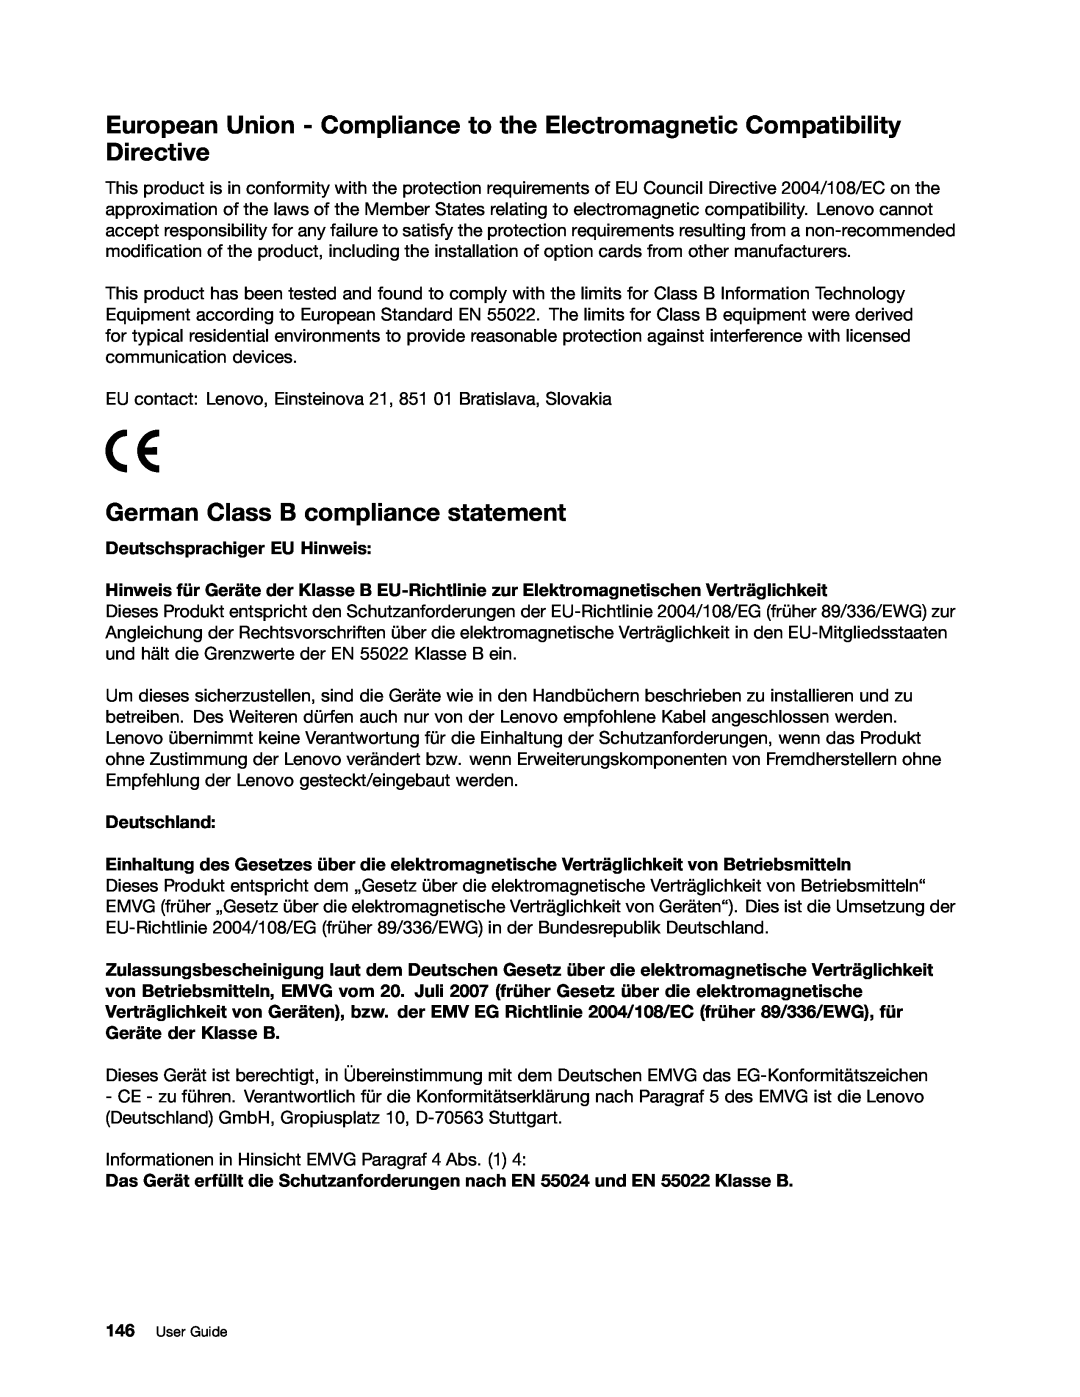 Lenovo 20AQ006HUS, 20AQ004JUS manual German Class B compliance statement, Deutschsprachiger EU Hinweis, Deutschland 